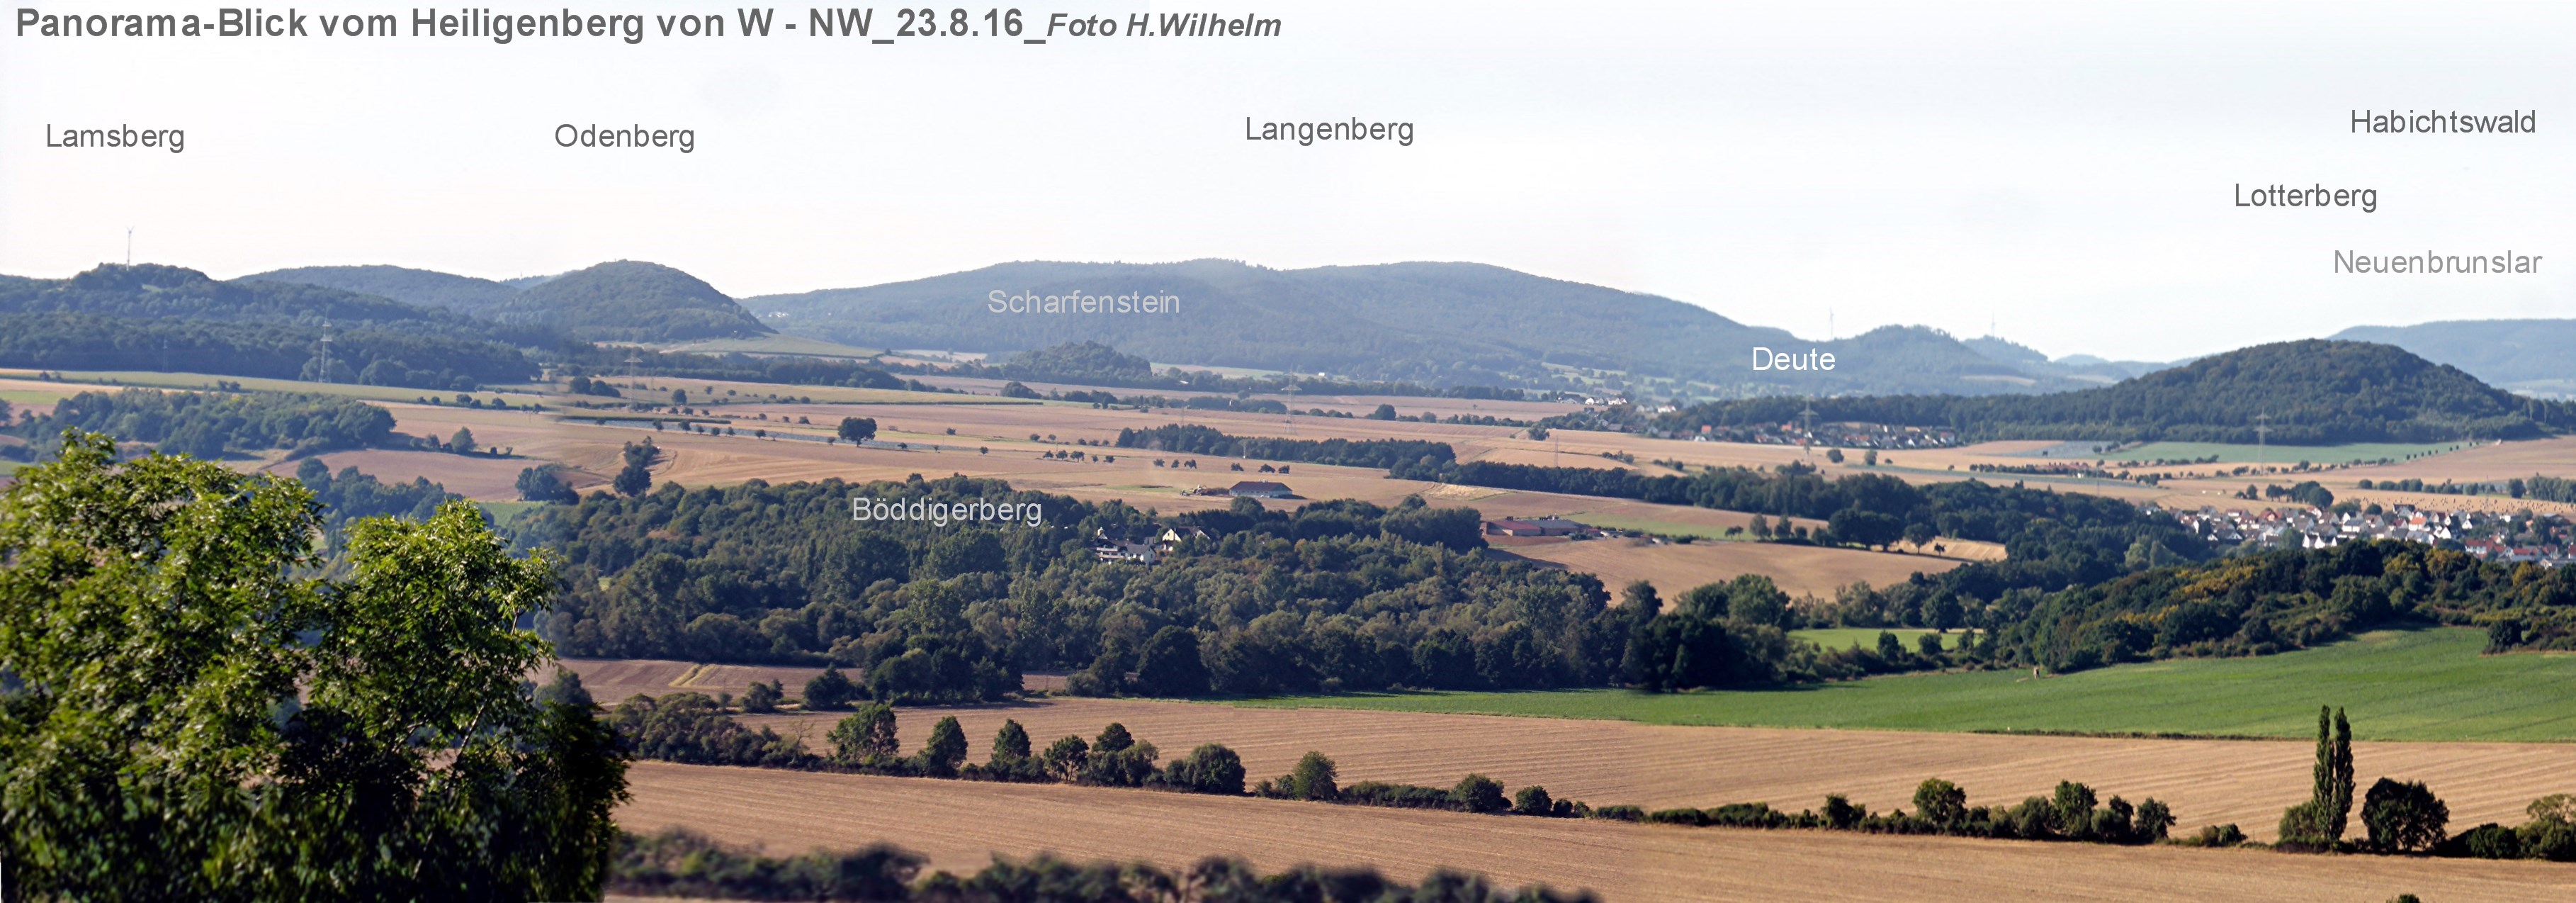 Web P1100726 Panorama vom Heiligenberg nach Deute hw